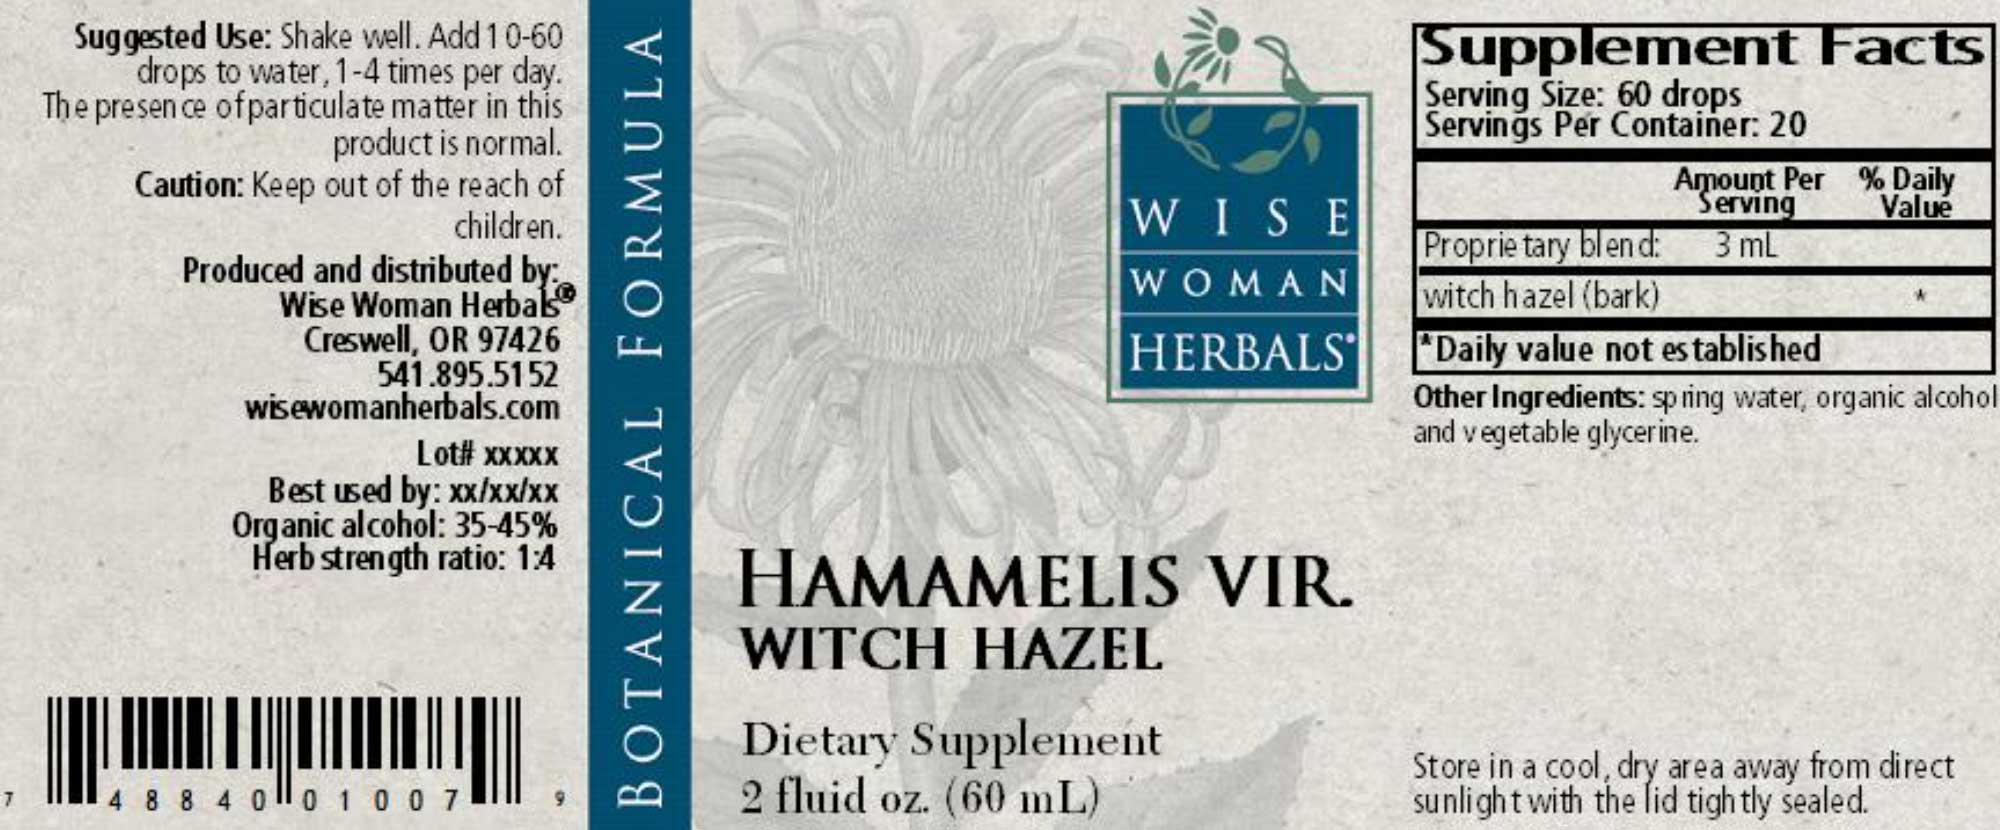 Wise Woman Herbals Hamamelis Virginiana Witch Hazel Label